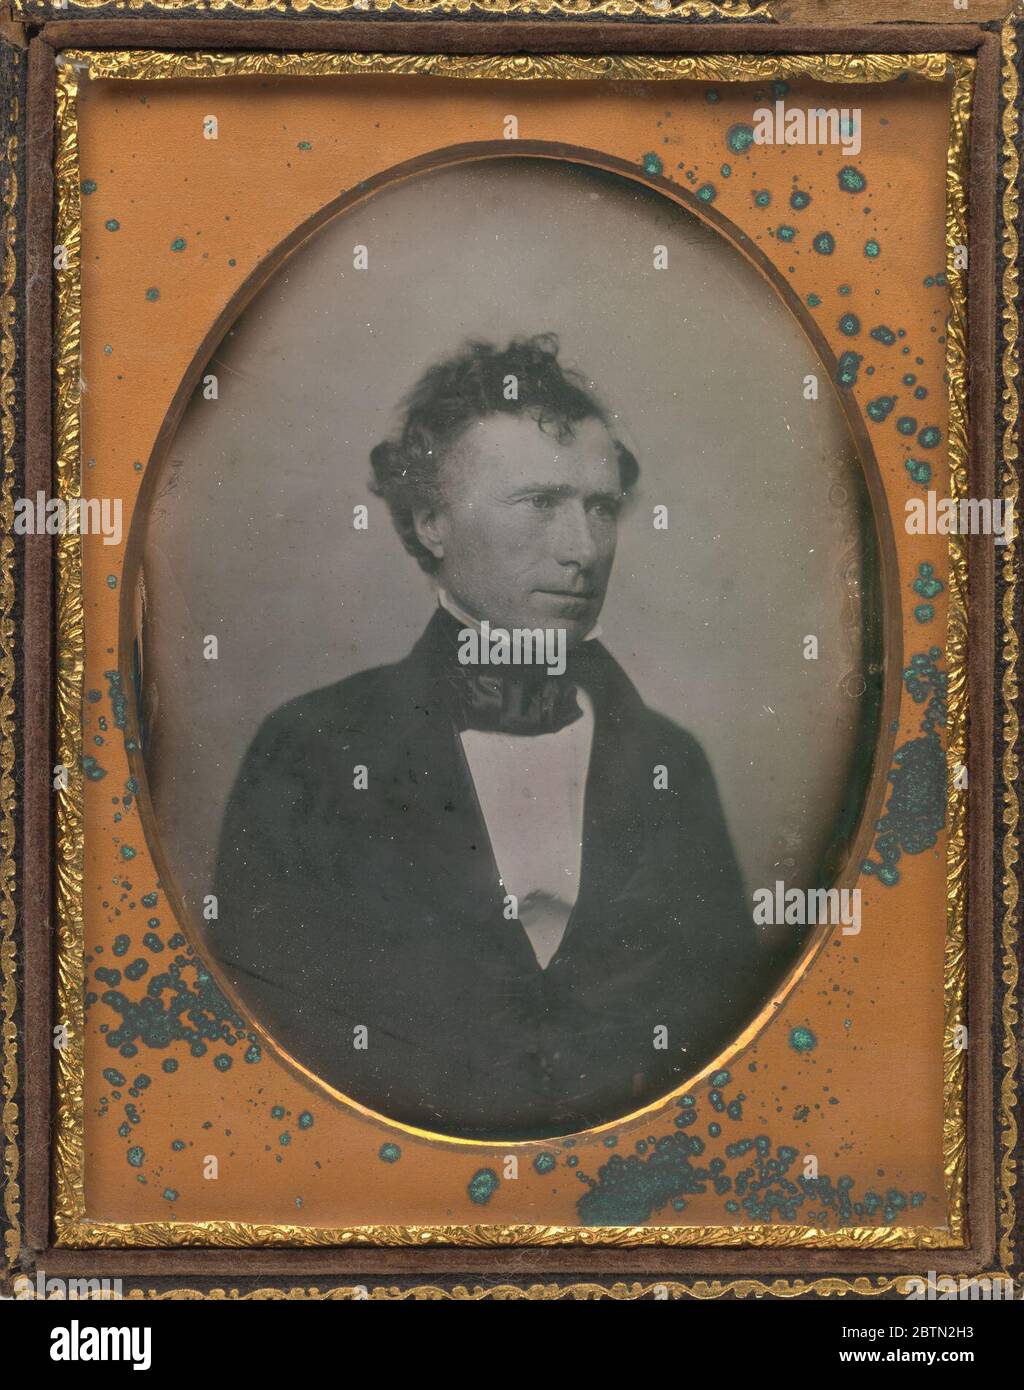 Franklin Pierce. La nascita della fotografia nel 1839 ha fornito un nuovo mezzo per registrare e diffondere le somiglianze dei presidenti americani. Foto Stock